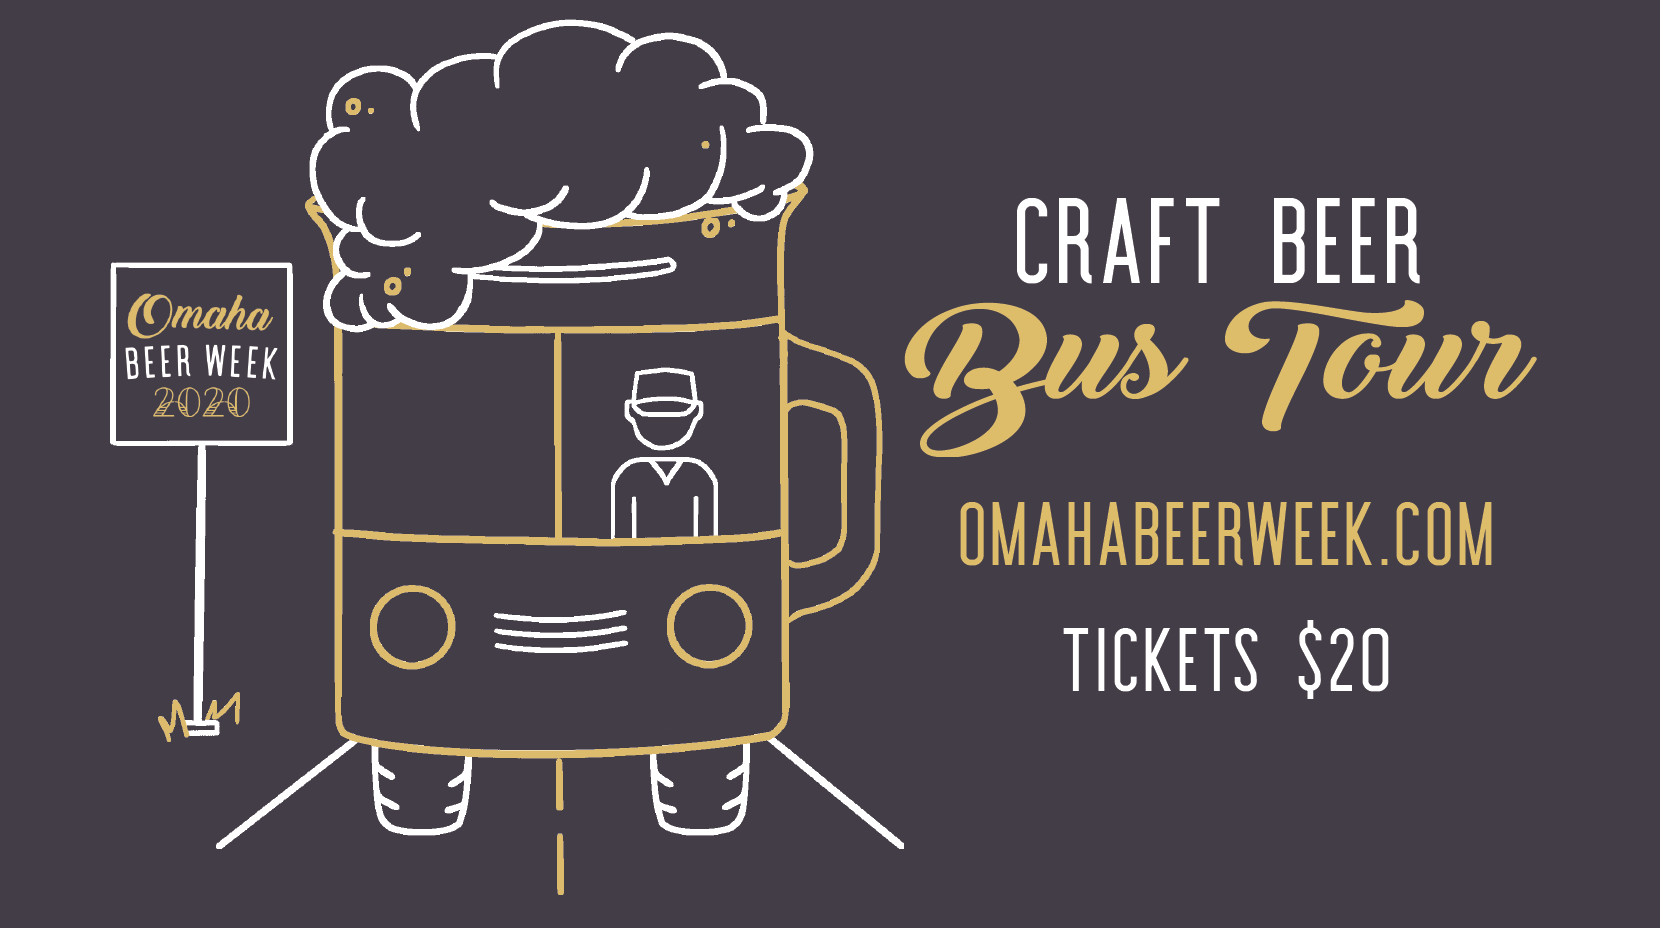 Craft Beer Bus Tour 2020 - Omaha Beer Week